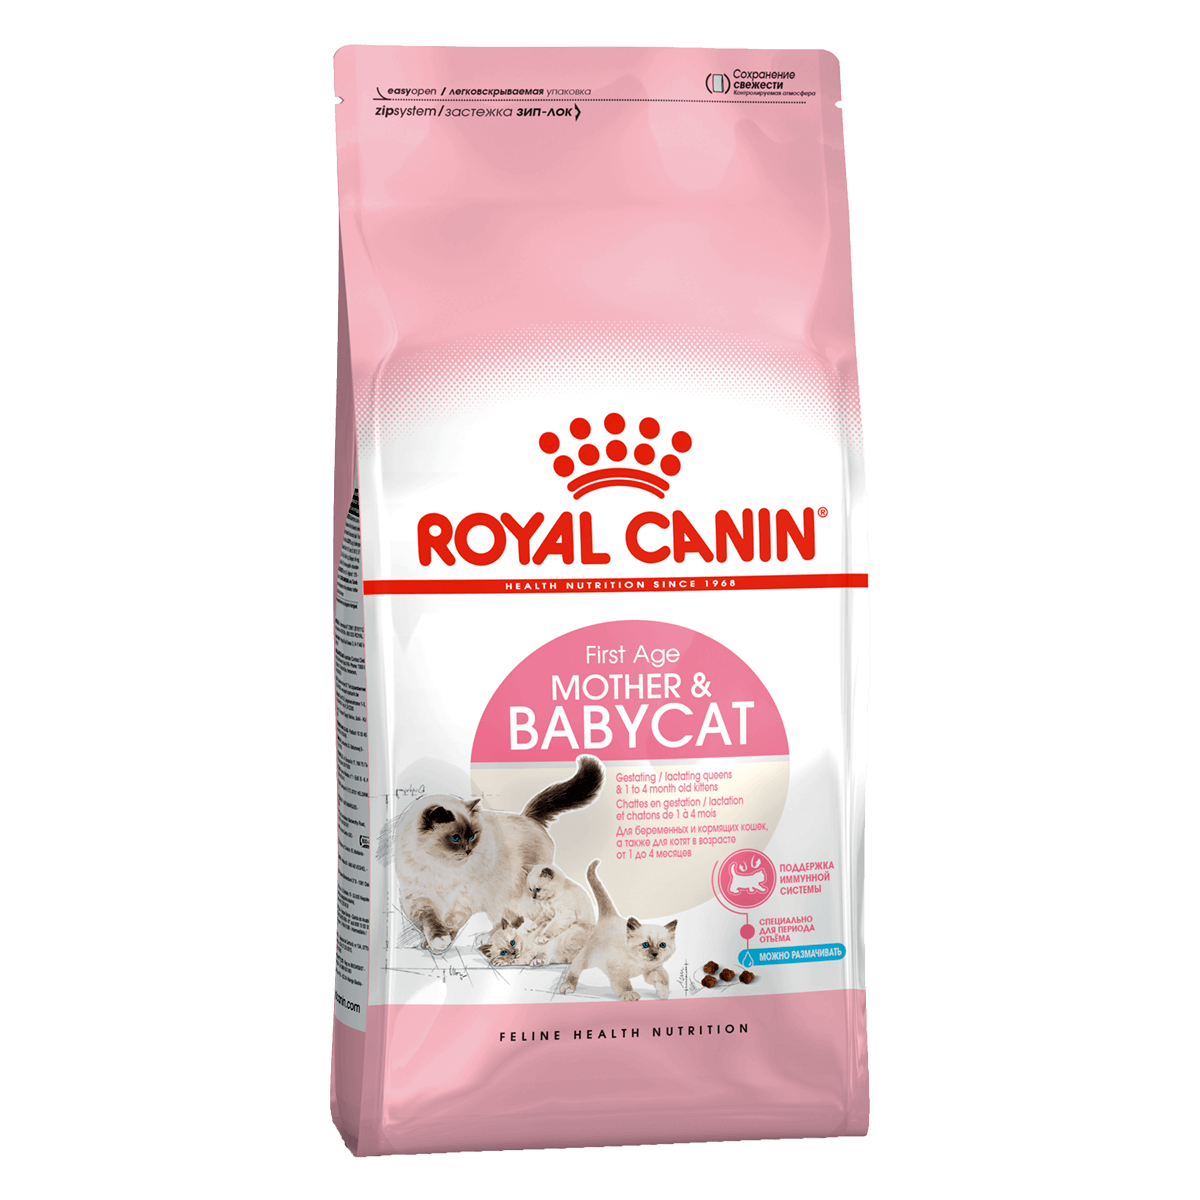 Royal Canin Babycat, 4 кг - корм Роял Канин для беременных и кормящих кошек